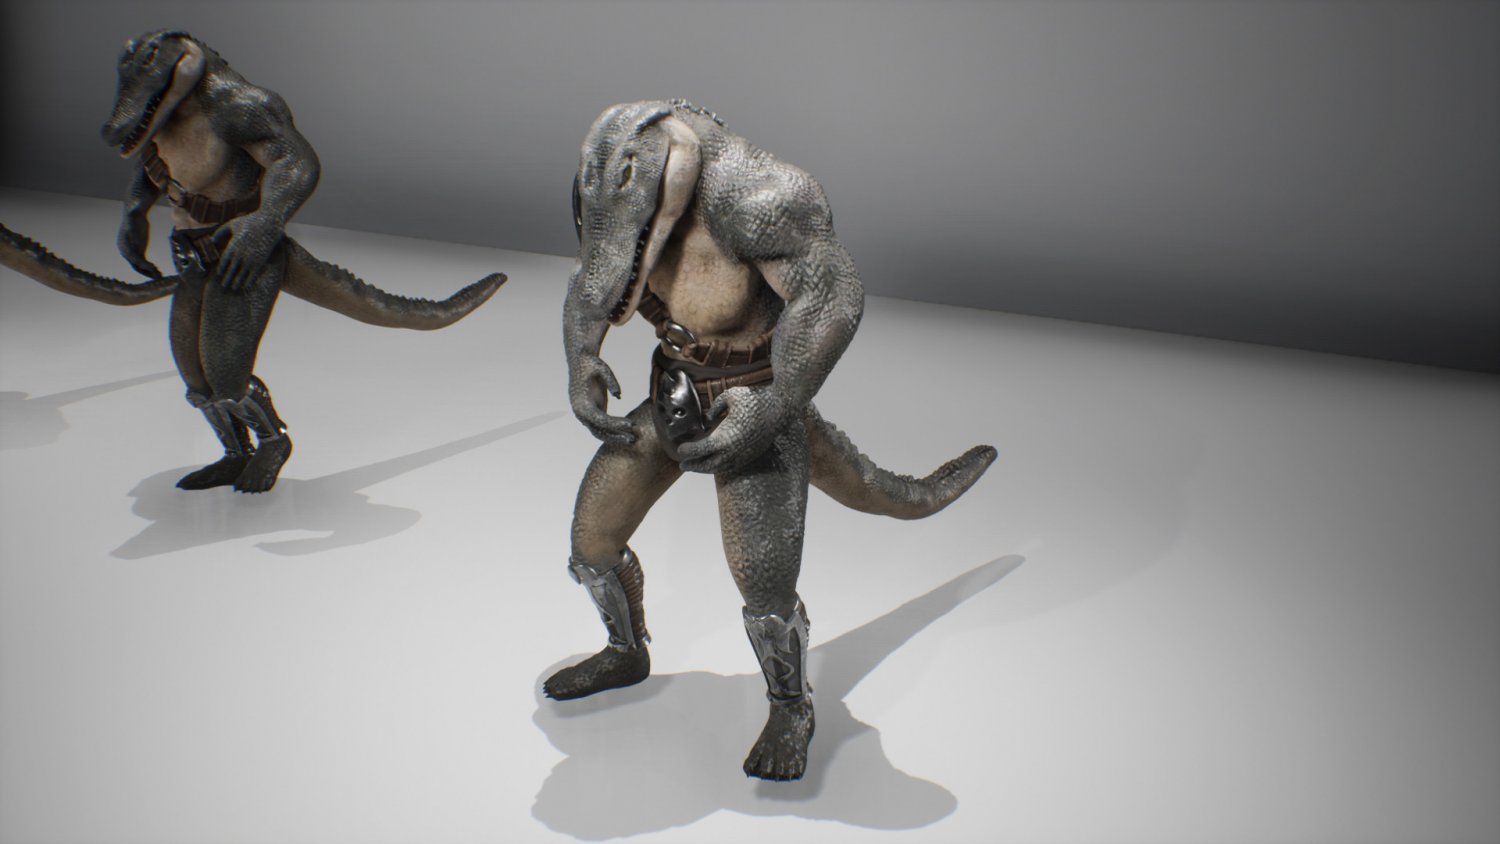 Lizardman Heavy Knight in Characters - UE Marketplace